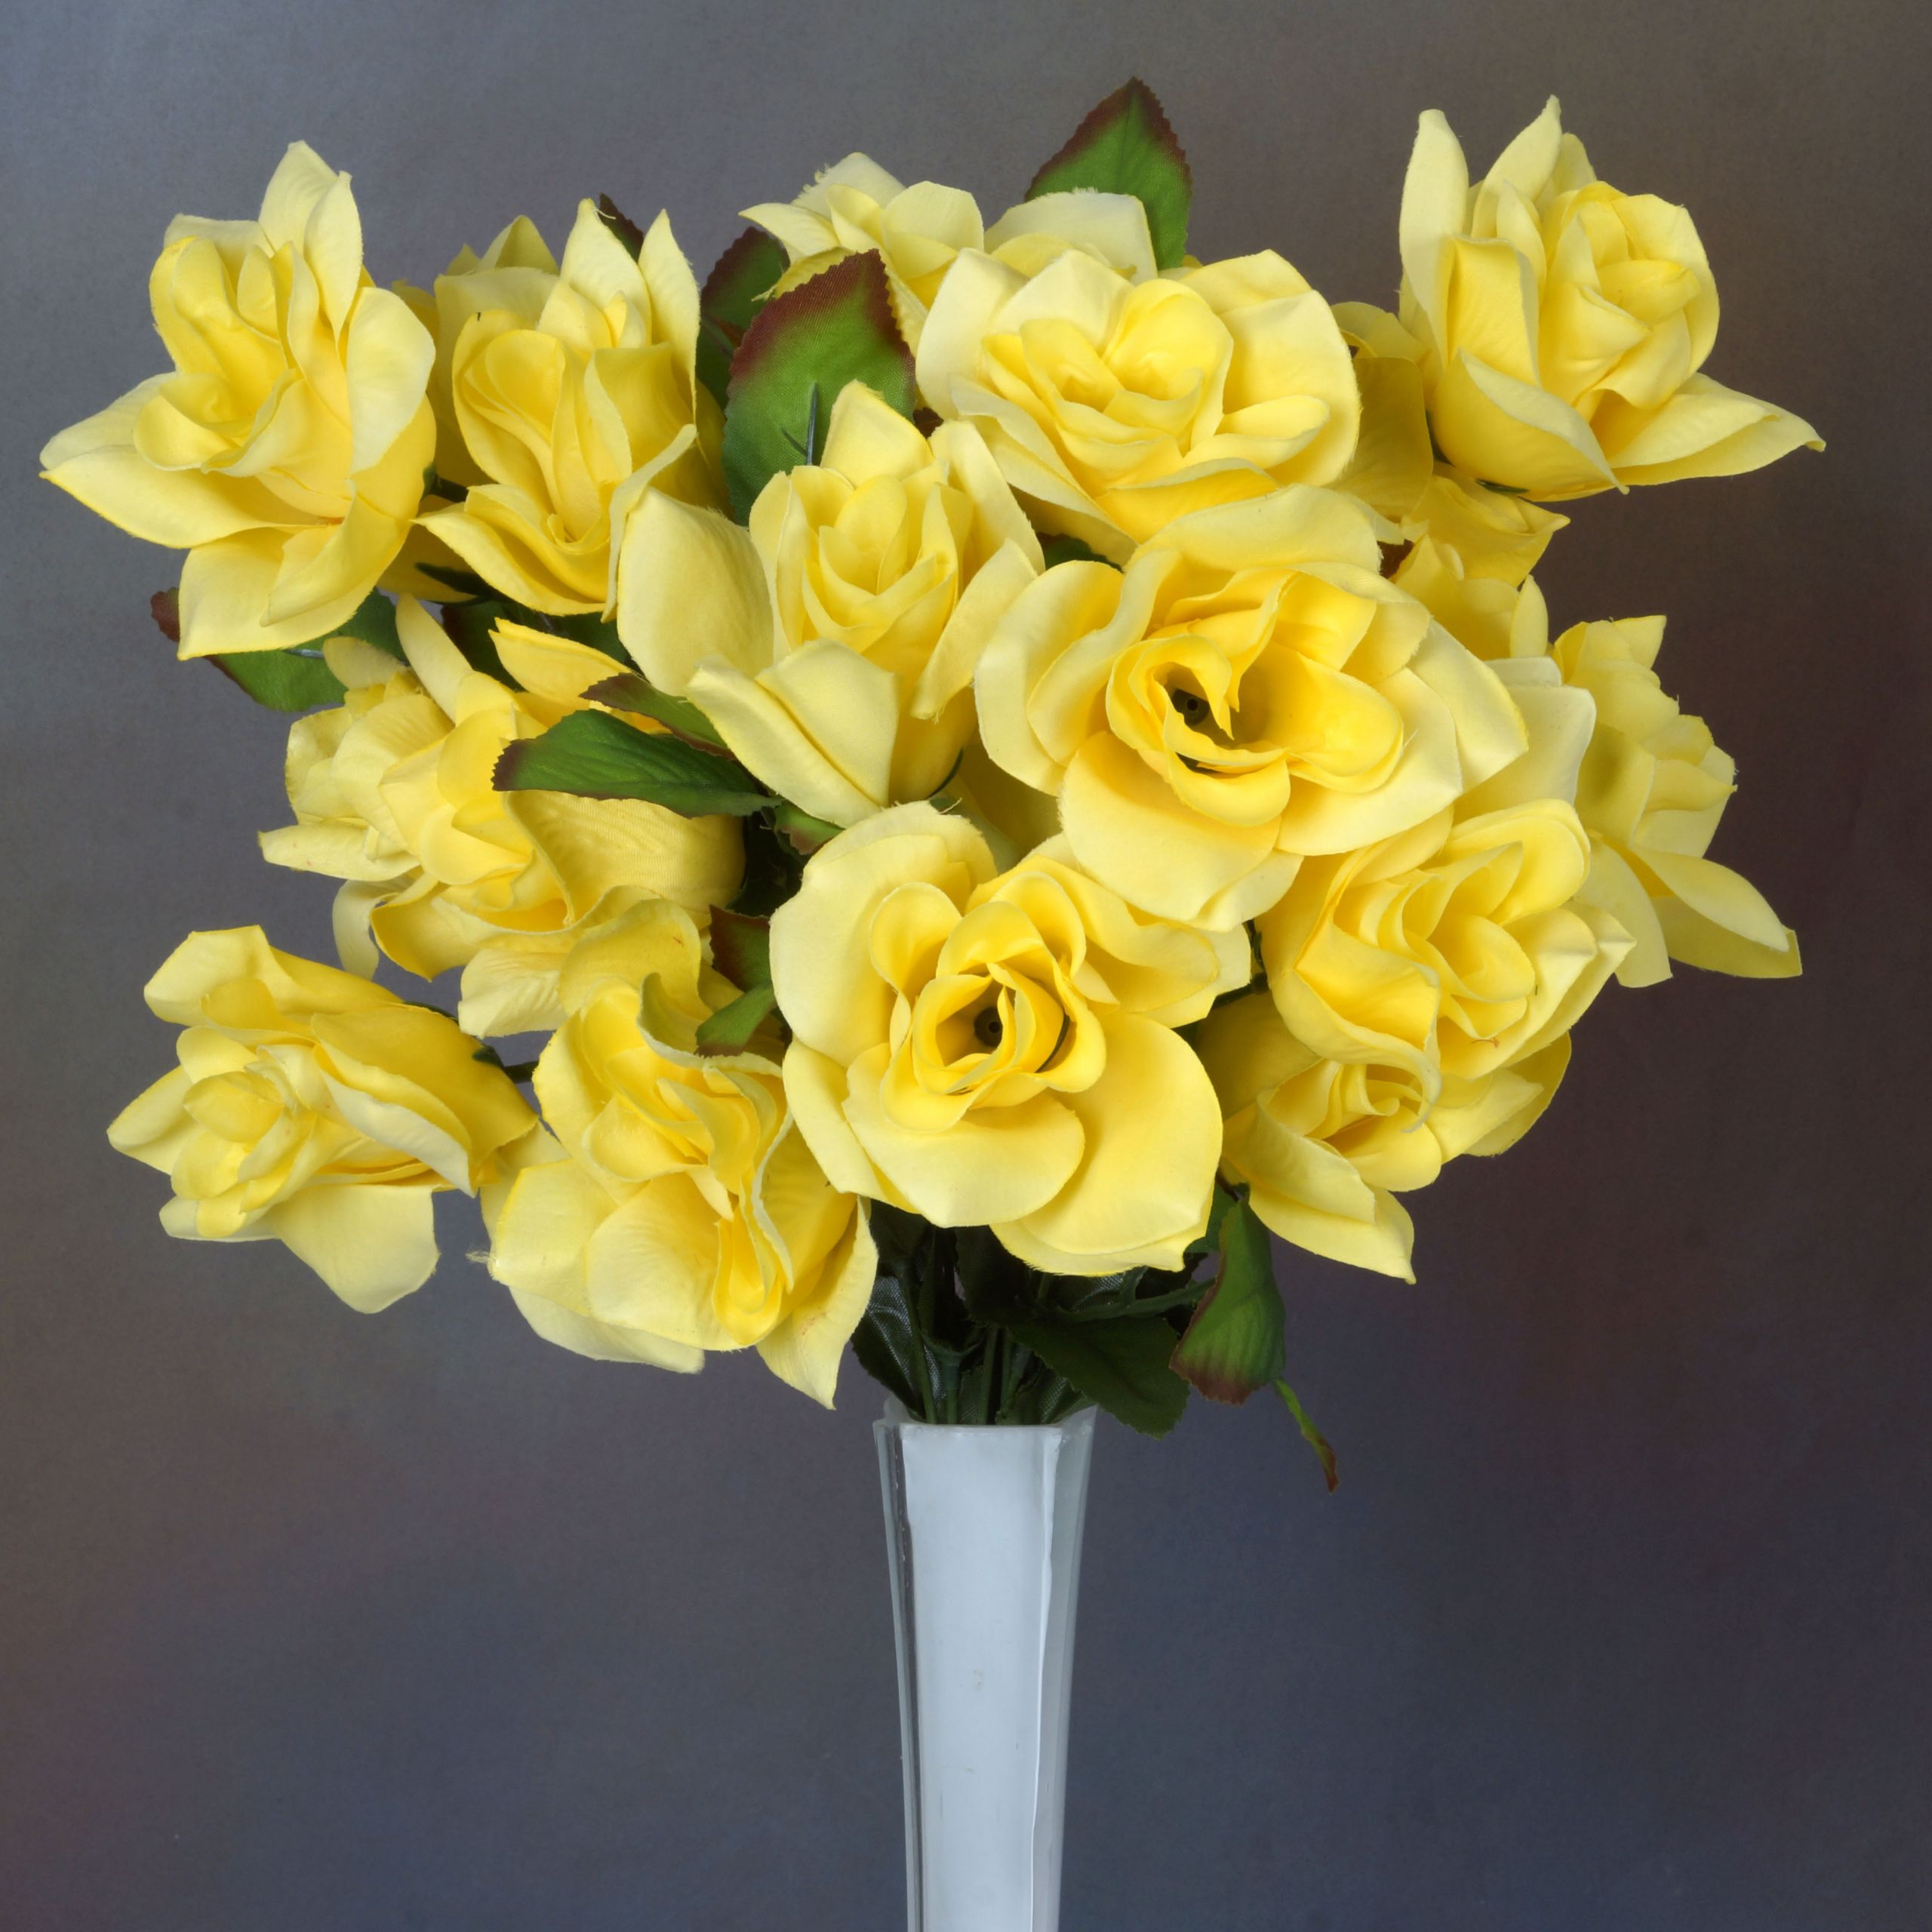 Wholesale Flowers For Weddings
 336 VELVET BLOOM OPEN ROSES Wholesale Wedding Flowers